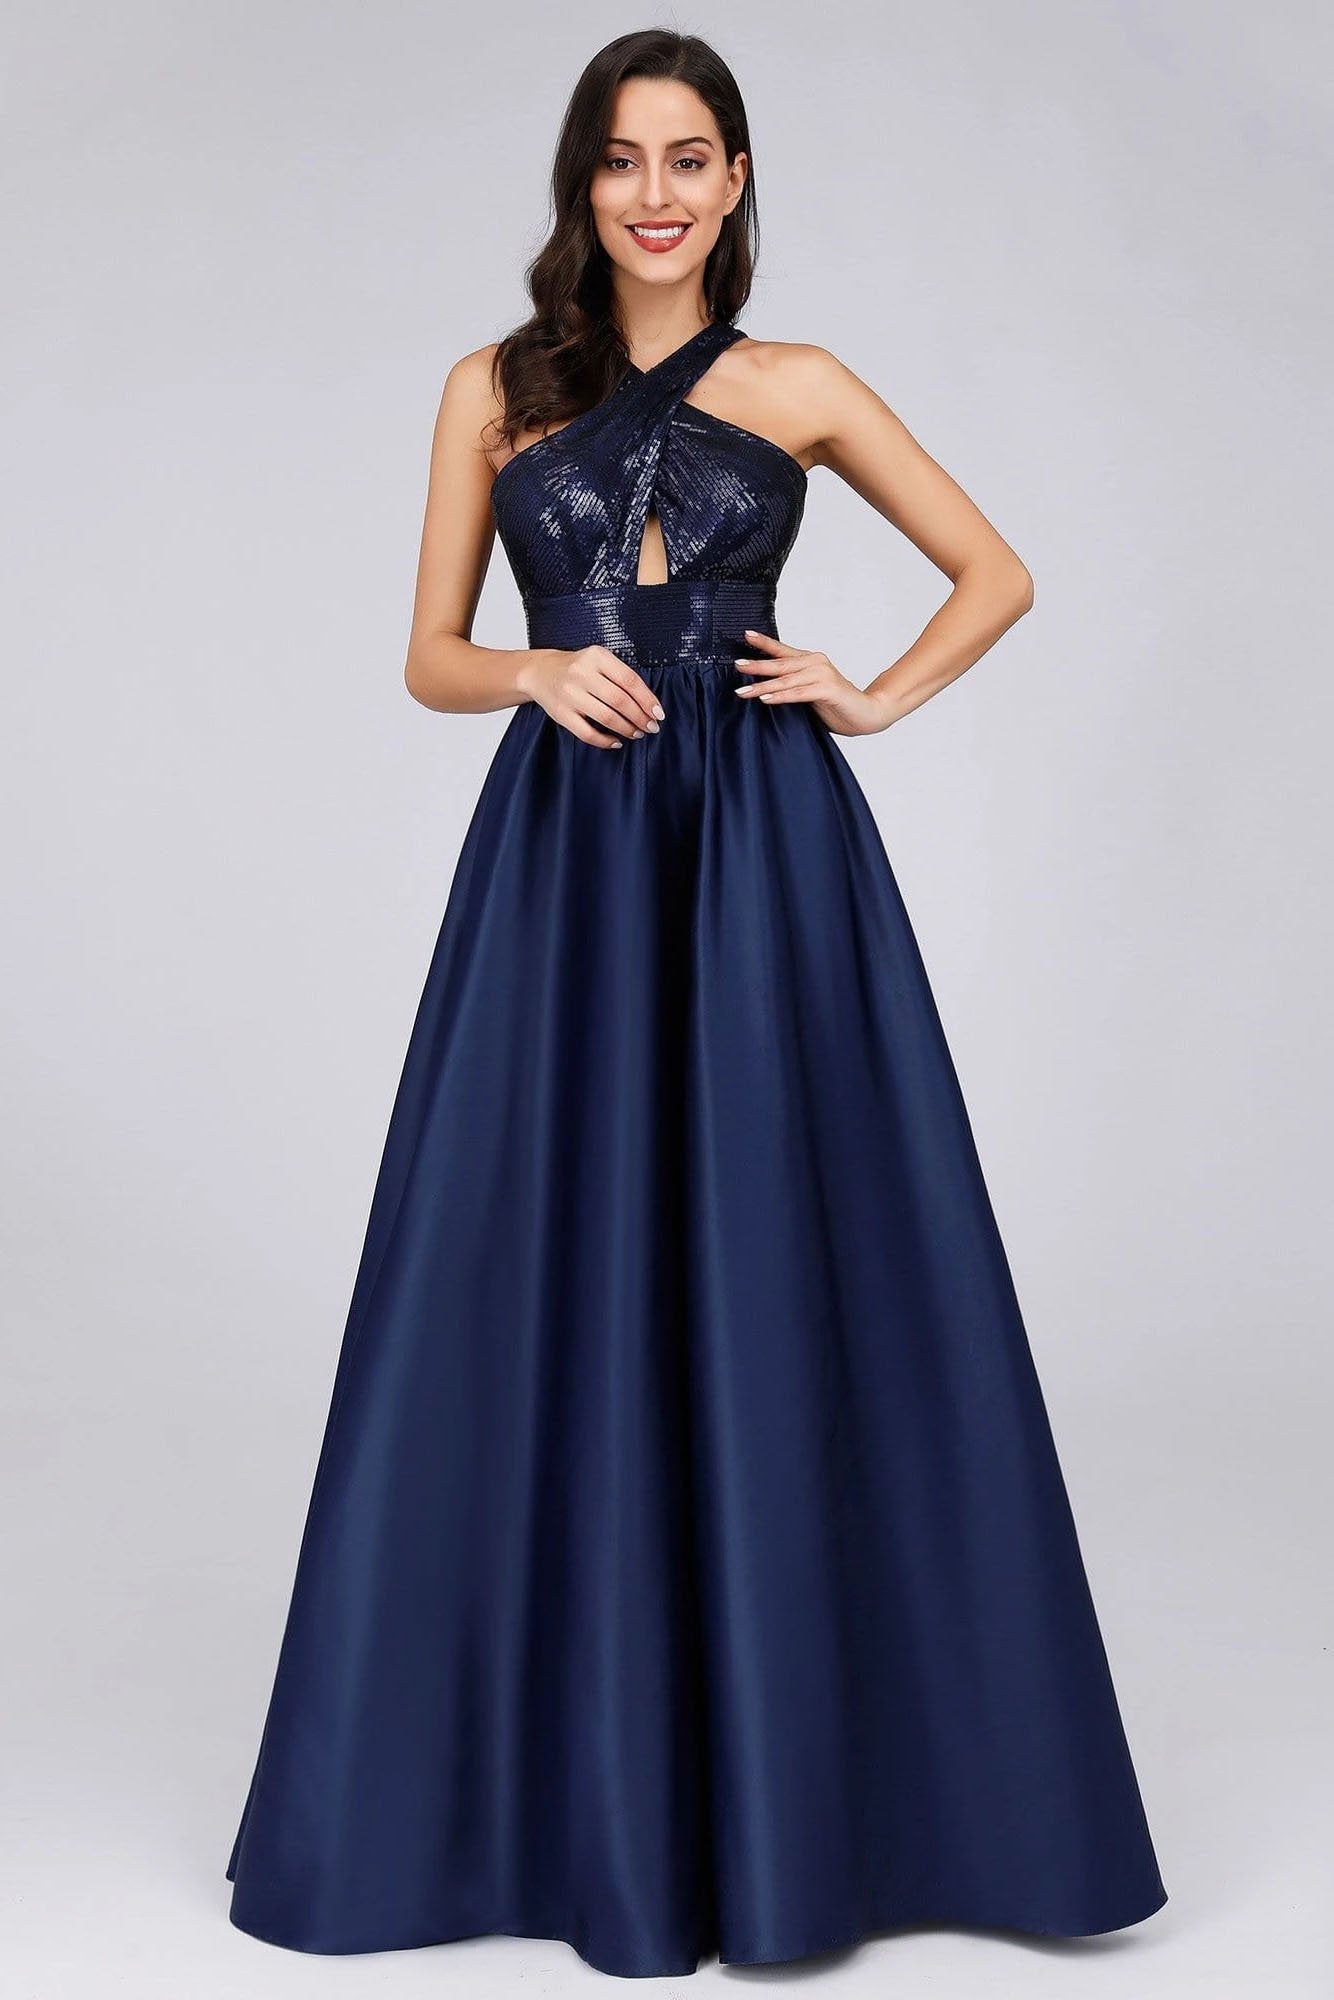 Cold Shoulder Sequin Navy Blue Prom Dresses Backless Satin Long Evening Dresses SRS15132